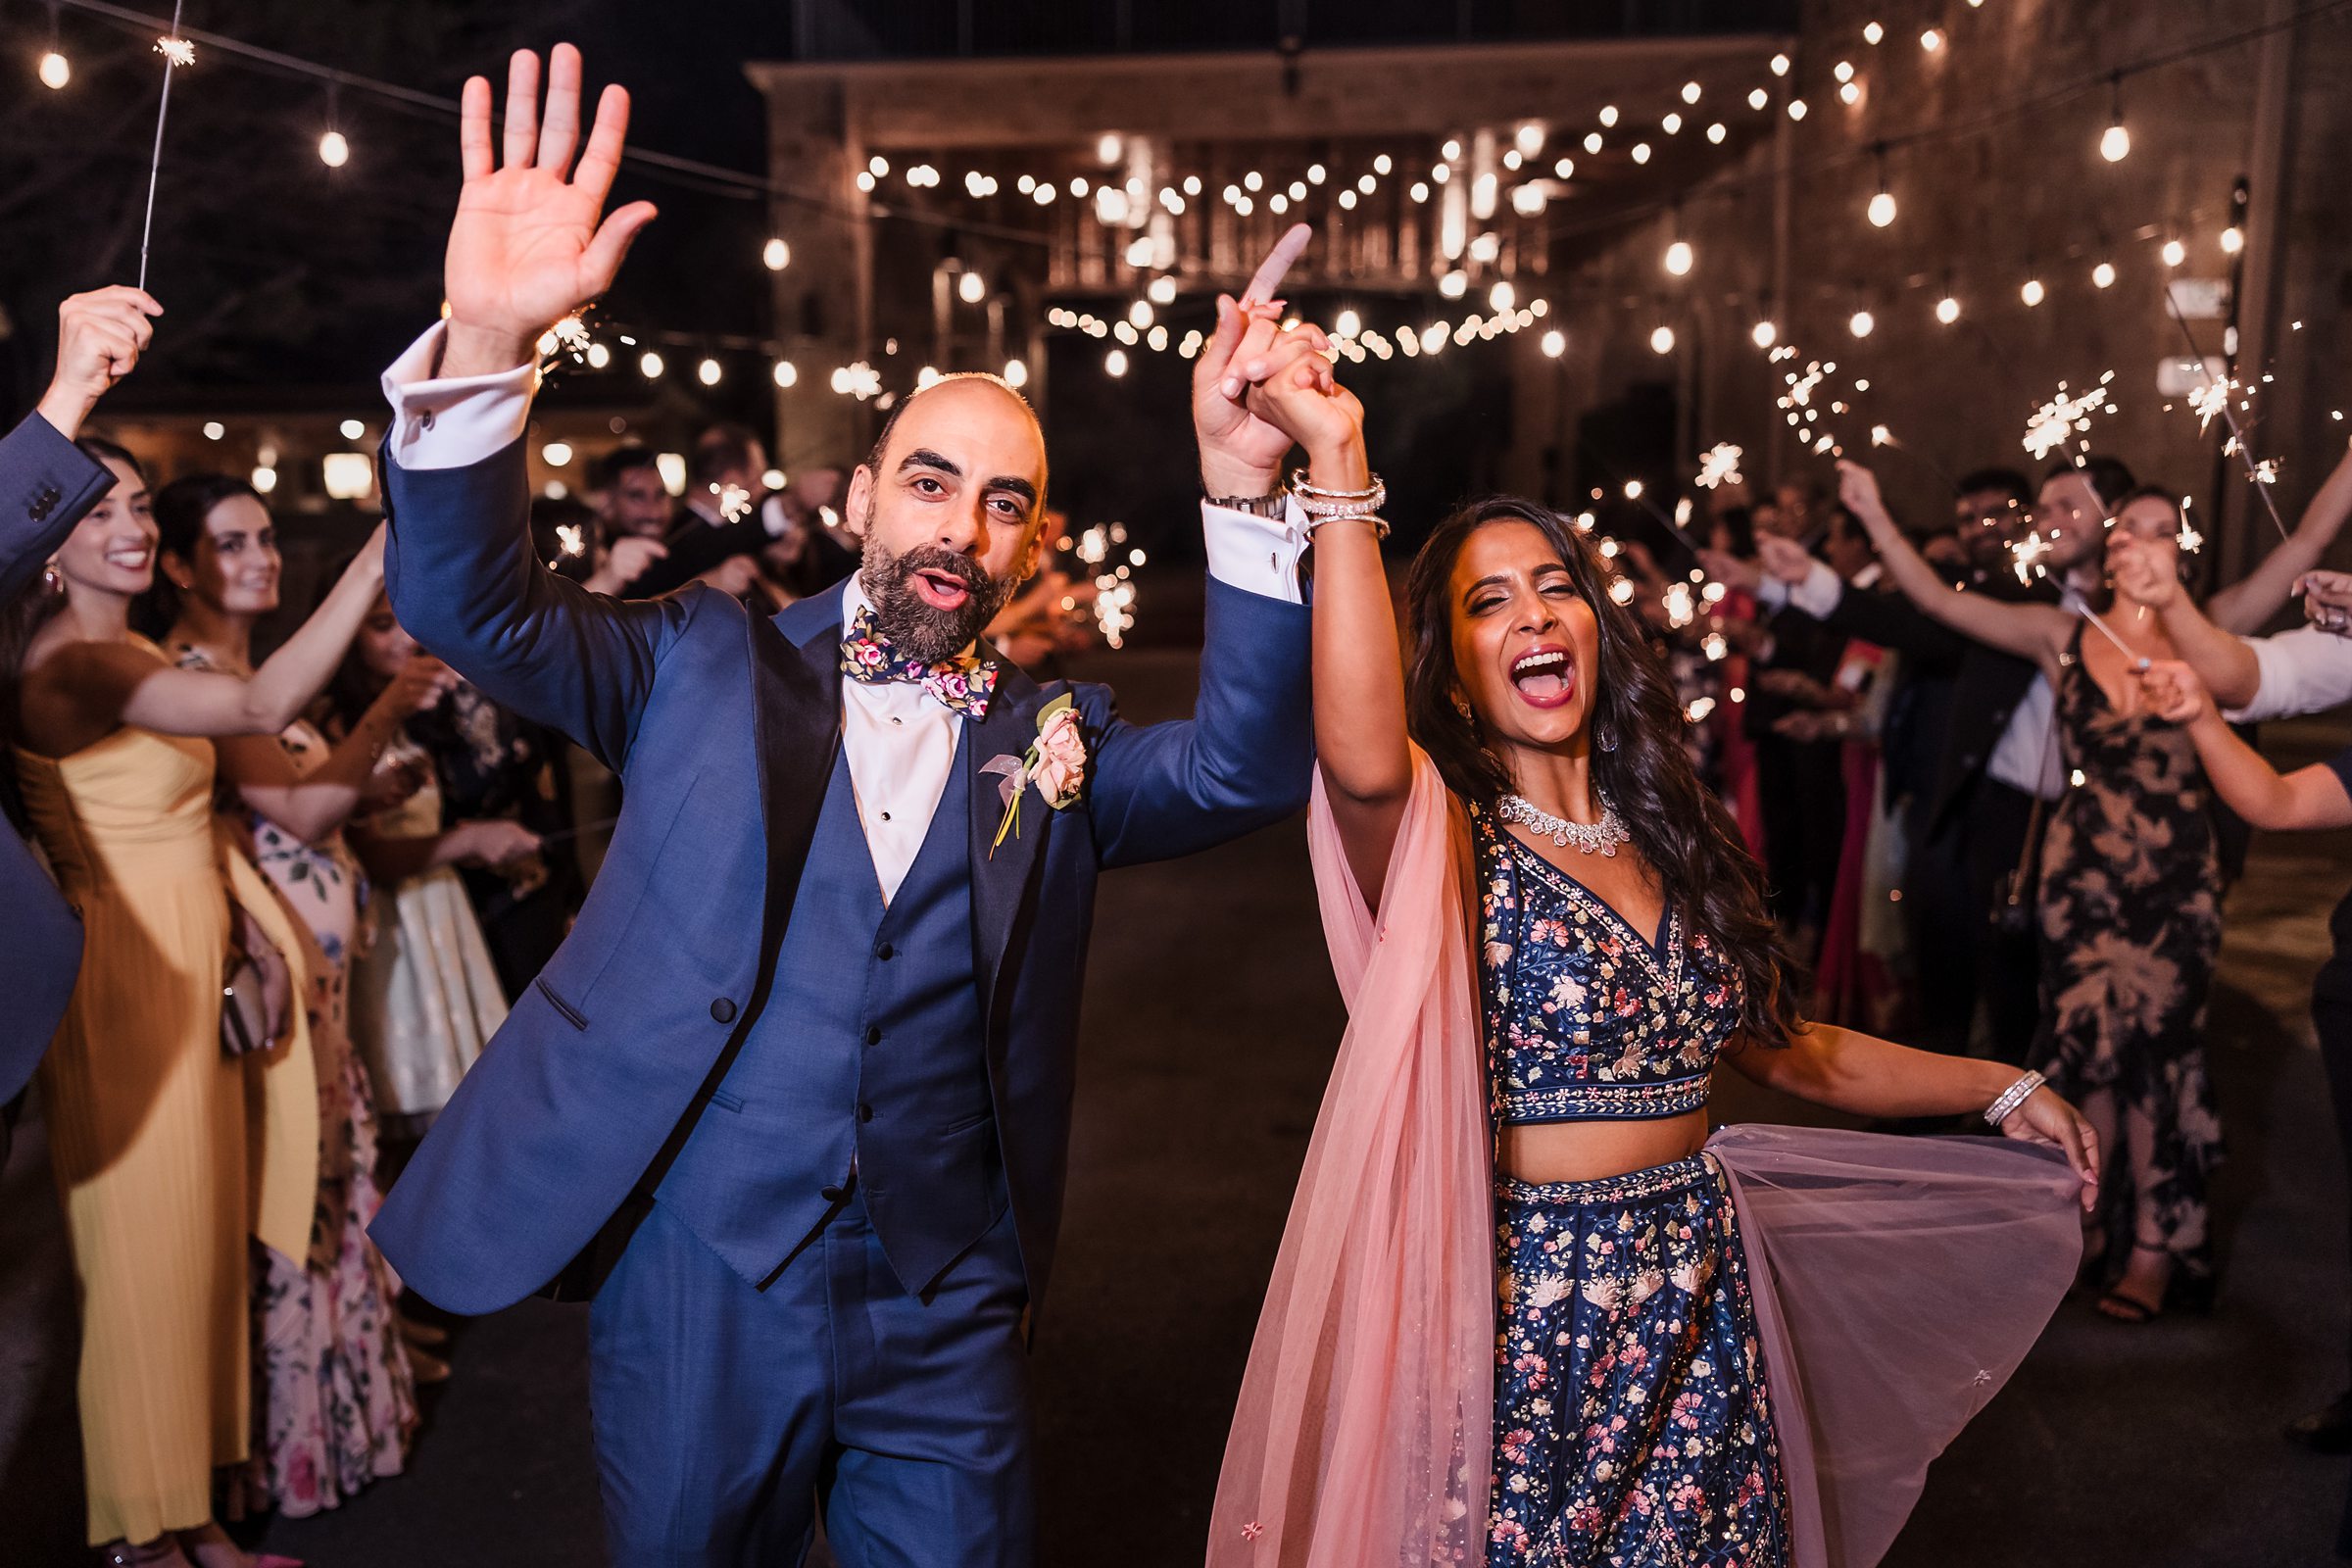 Bride and groom celebrate during a wedding at Shiraz Garden in Bastrop, Texas.